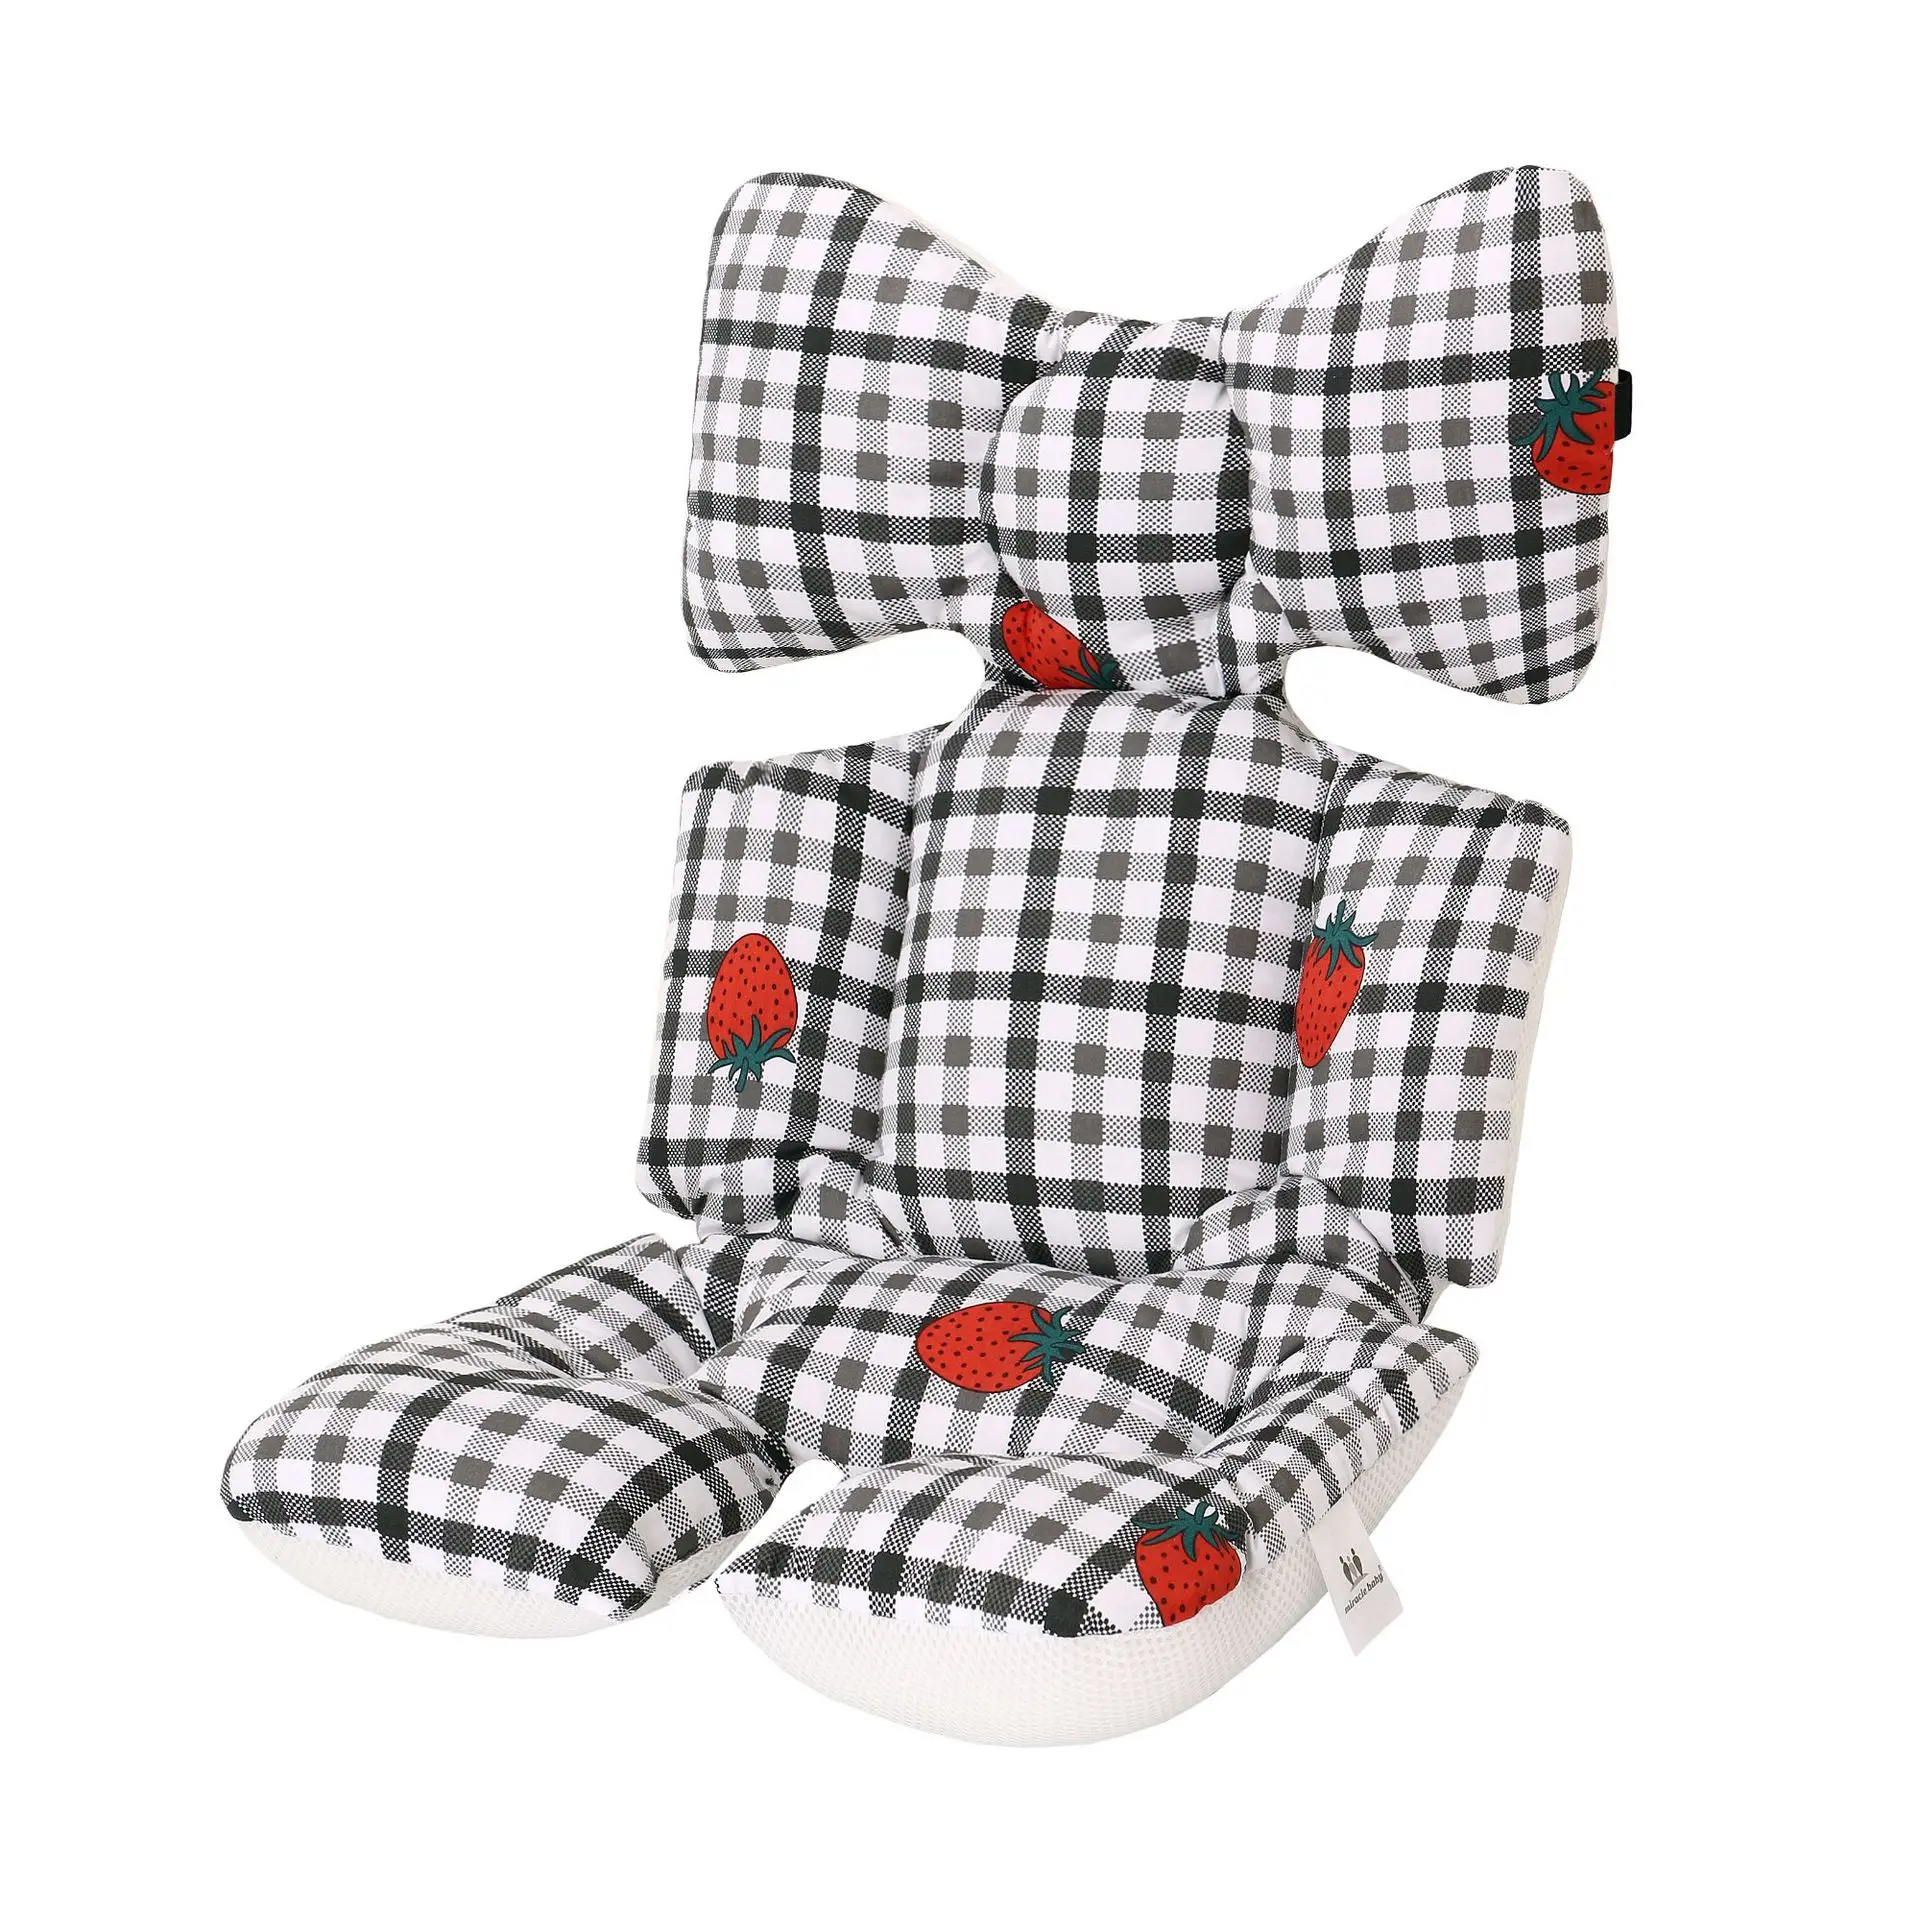 2 кристалла по бокам с принтом для малышей, подушка для детской коляски кресло теплая подушка матрасы, наволочка ребенок каретки корзину прокладка тележка Подушка на стул - Цвет: STRAWBERRY